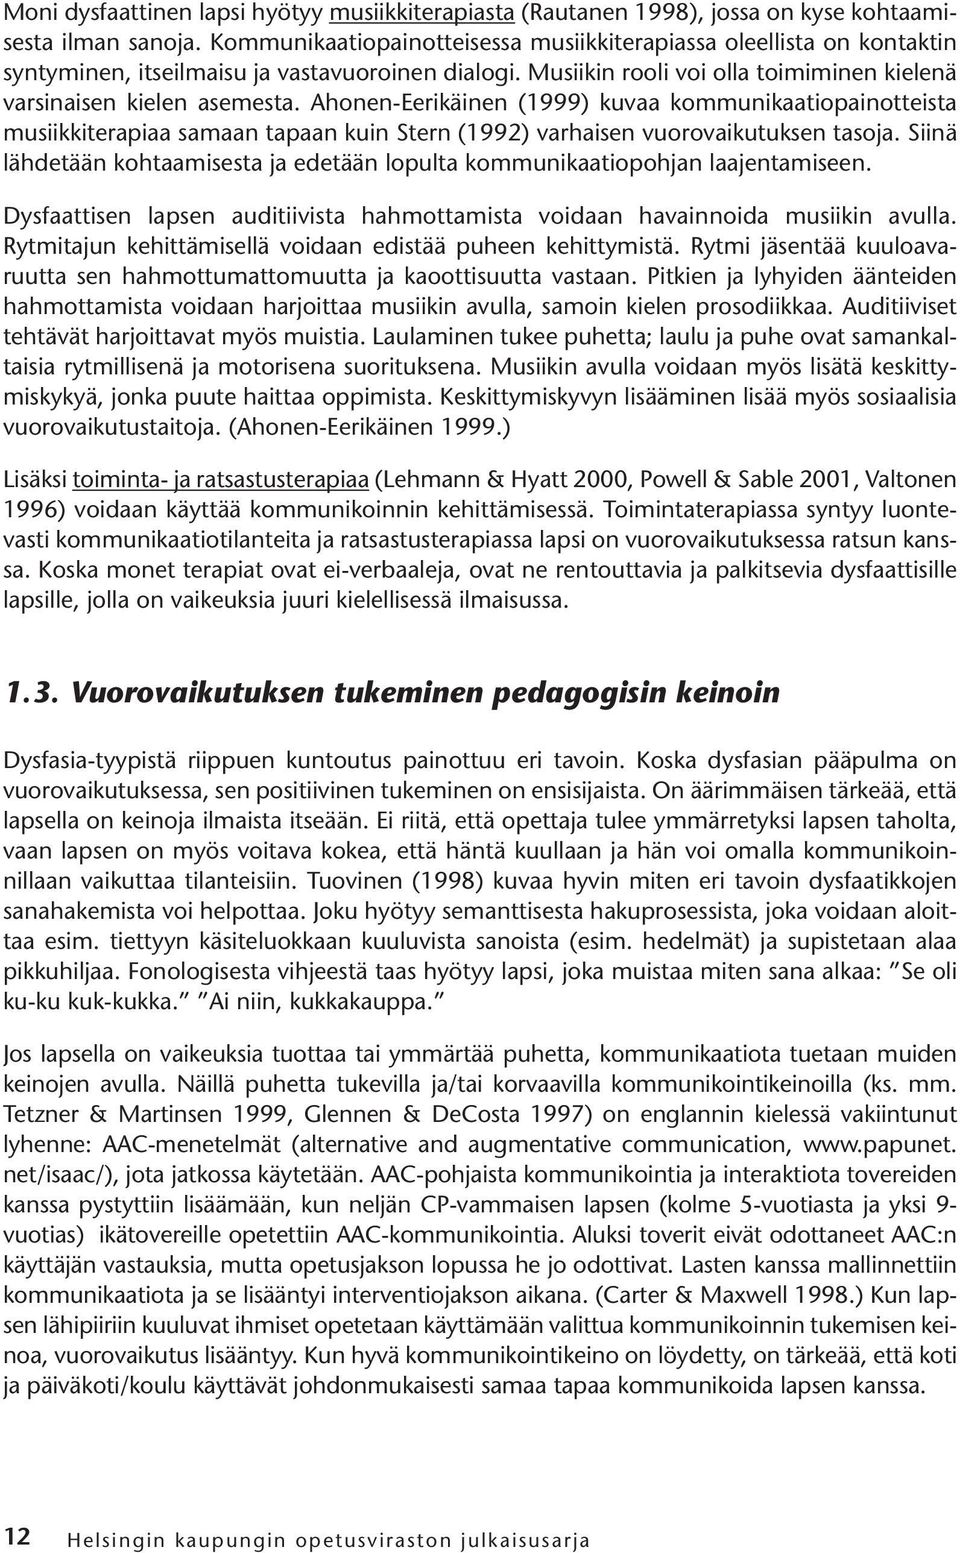 Ahonen-Eerikäinen (1999) kuvaa kommunikaatiopainotteista musiikkiterapiaa samaan tapaan kuin Stern (1992) varhaisen vuorovaikutuksen tasoja.